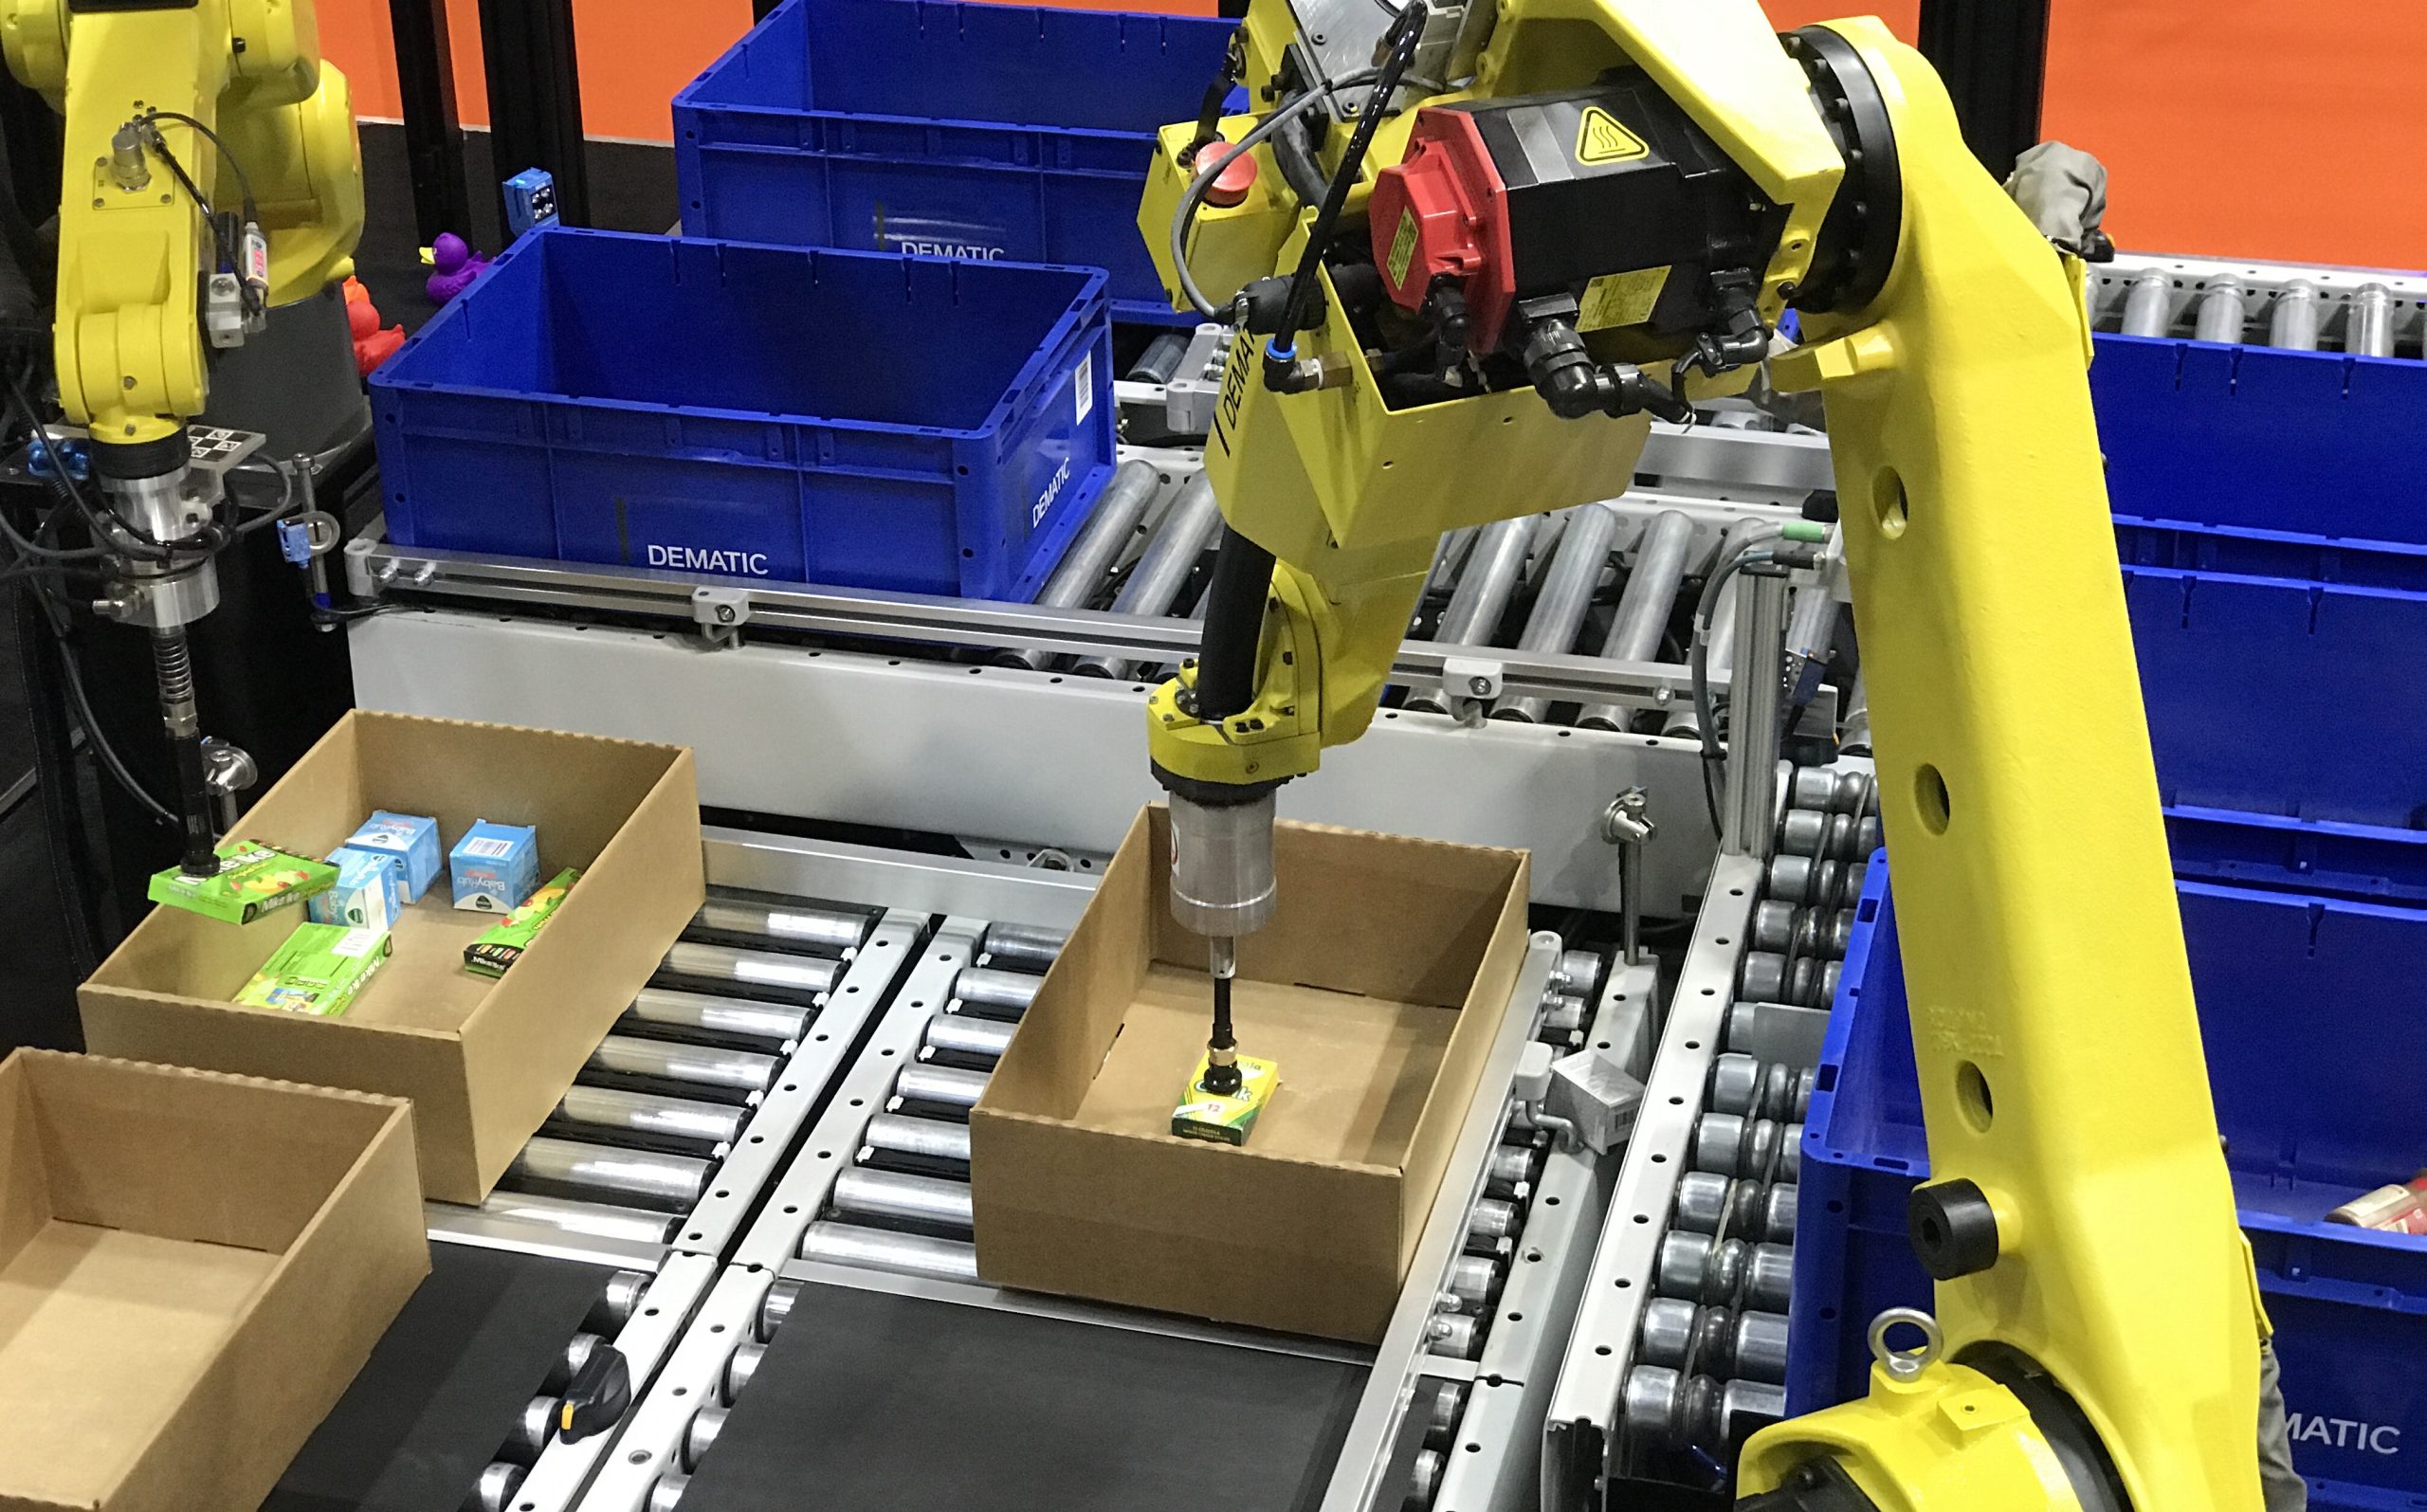 Los robots comienzan a dominar los trabajos de almacén y logística